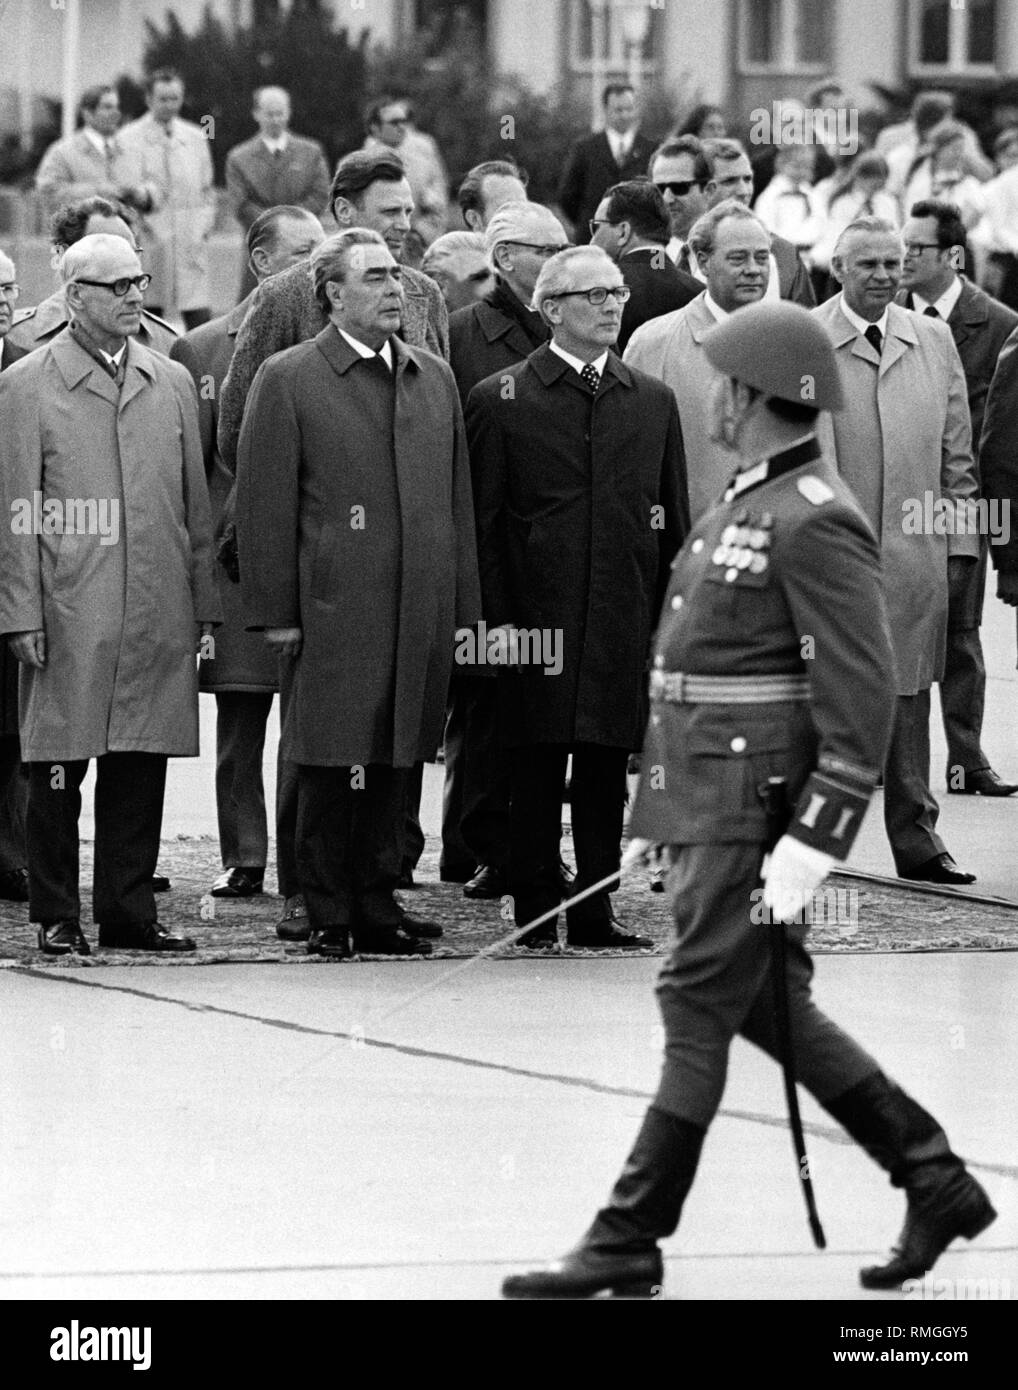 Willy Stroph, Leonid Breschnew und Erich Honecker, Harry Tisch und Horst Dohlus (von links) während einer militärischen Zeremonie der NVA am Flughafen Berlin-Schönefeld Ost-berlin nach der Ankunft von Breschnew. Stockfoto